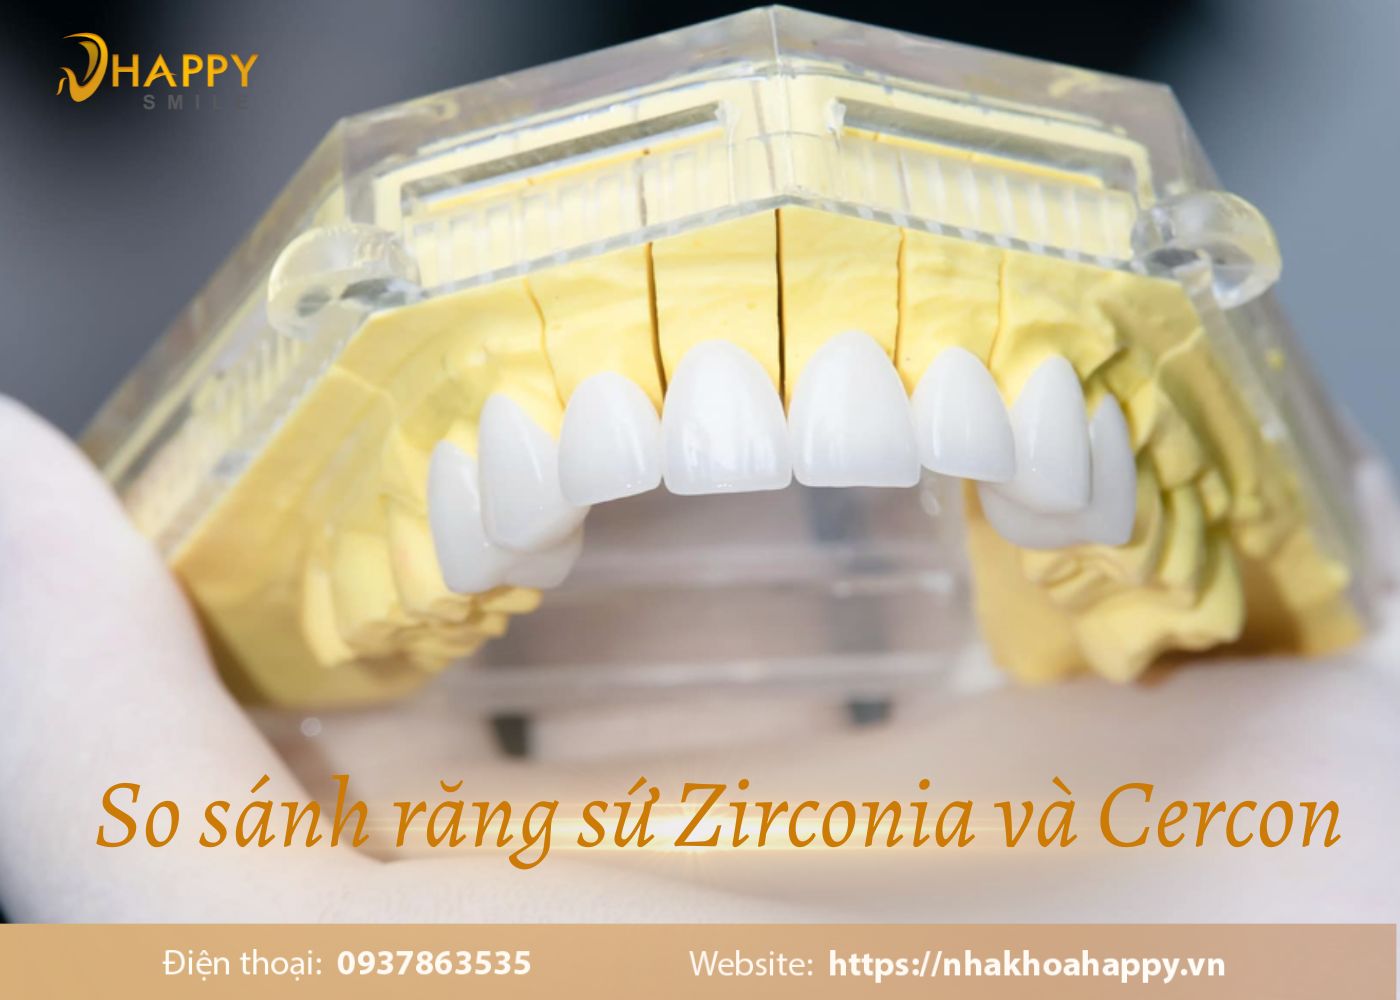 So sánh răng sứ Zirconia và Cercon nên dùng loại nào tốt nhất